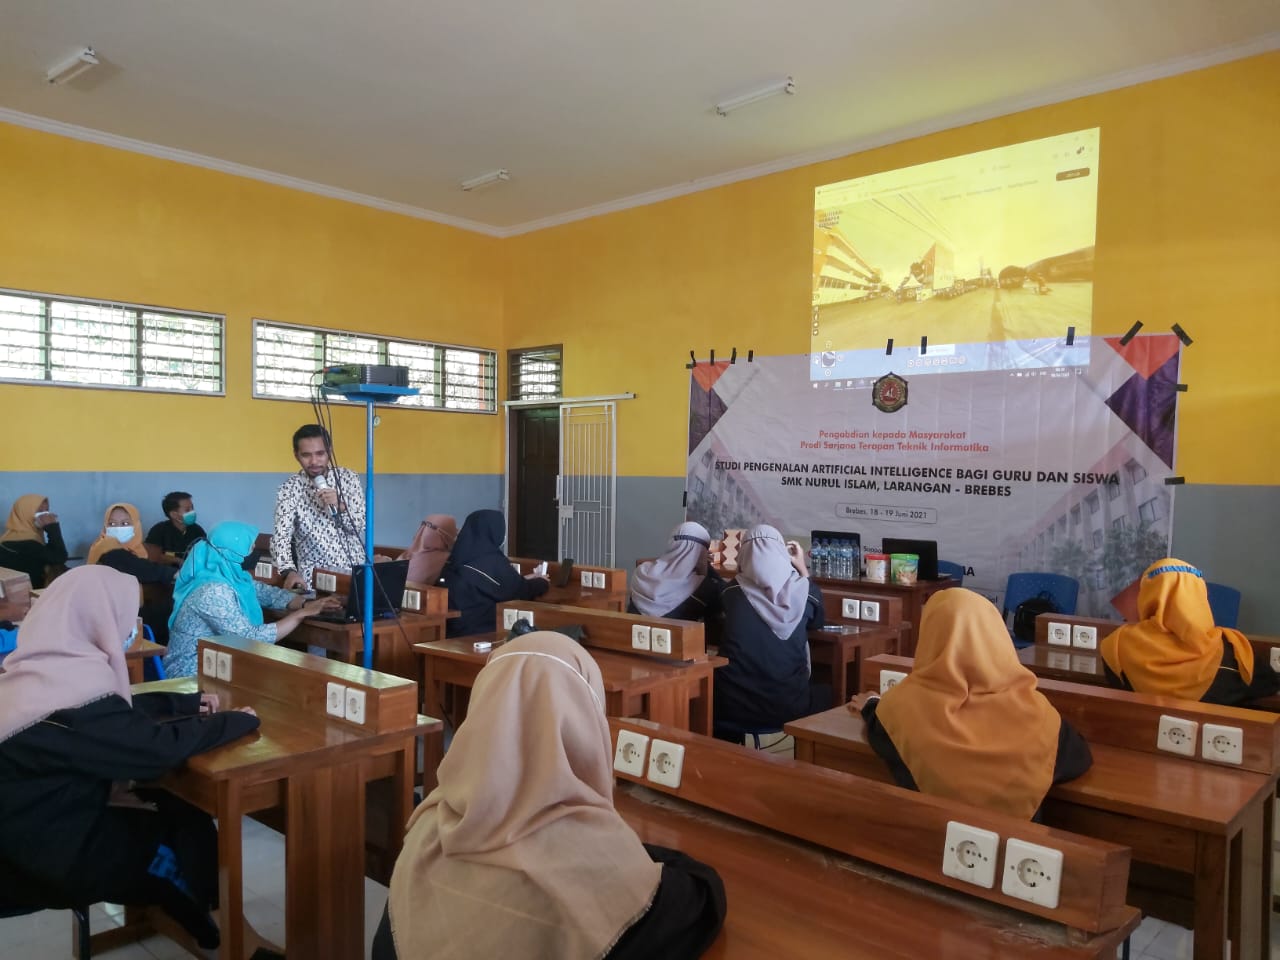 Dosen PHB Berikan Seminar dan Pelatihan Artificial Intelligence di SMK Nurul Islam Larangan 